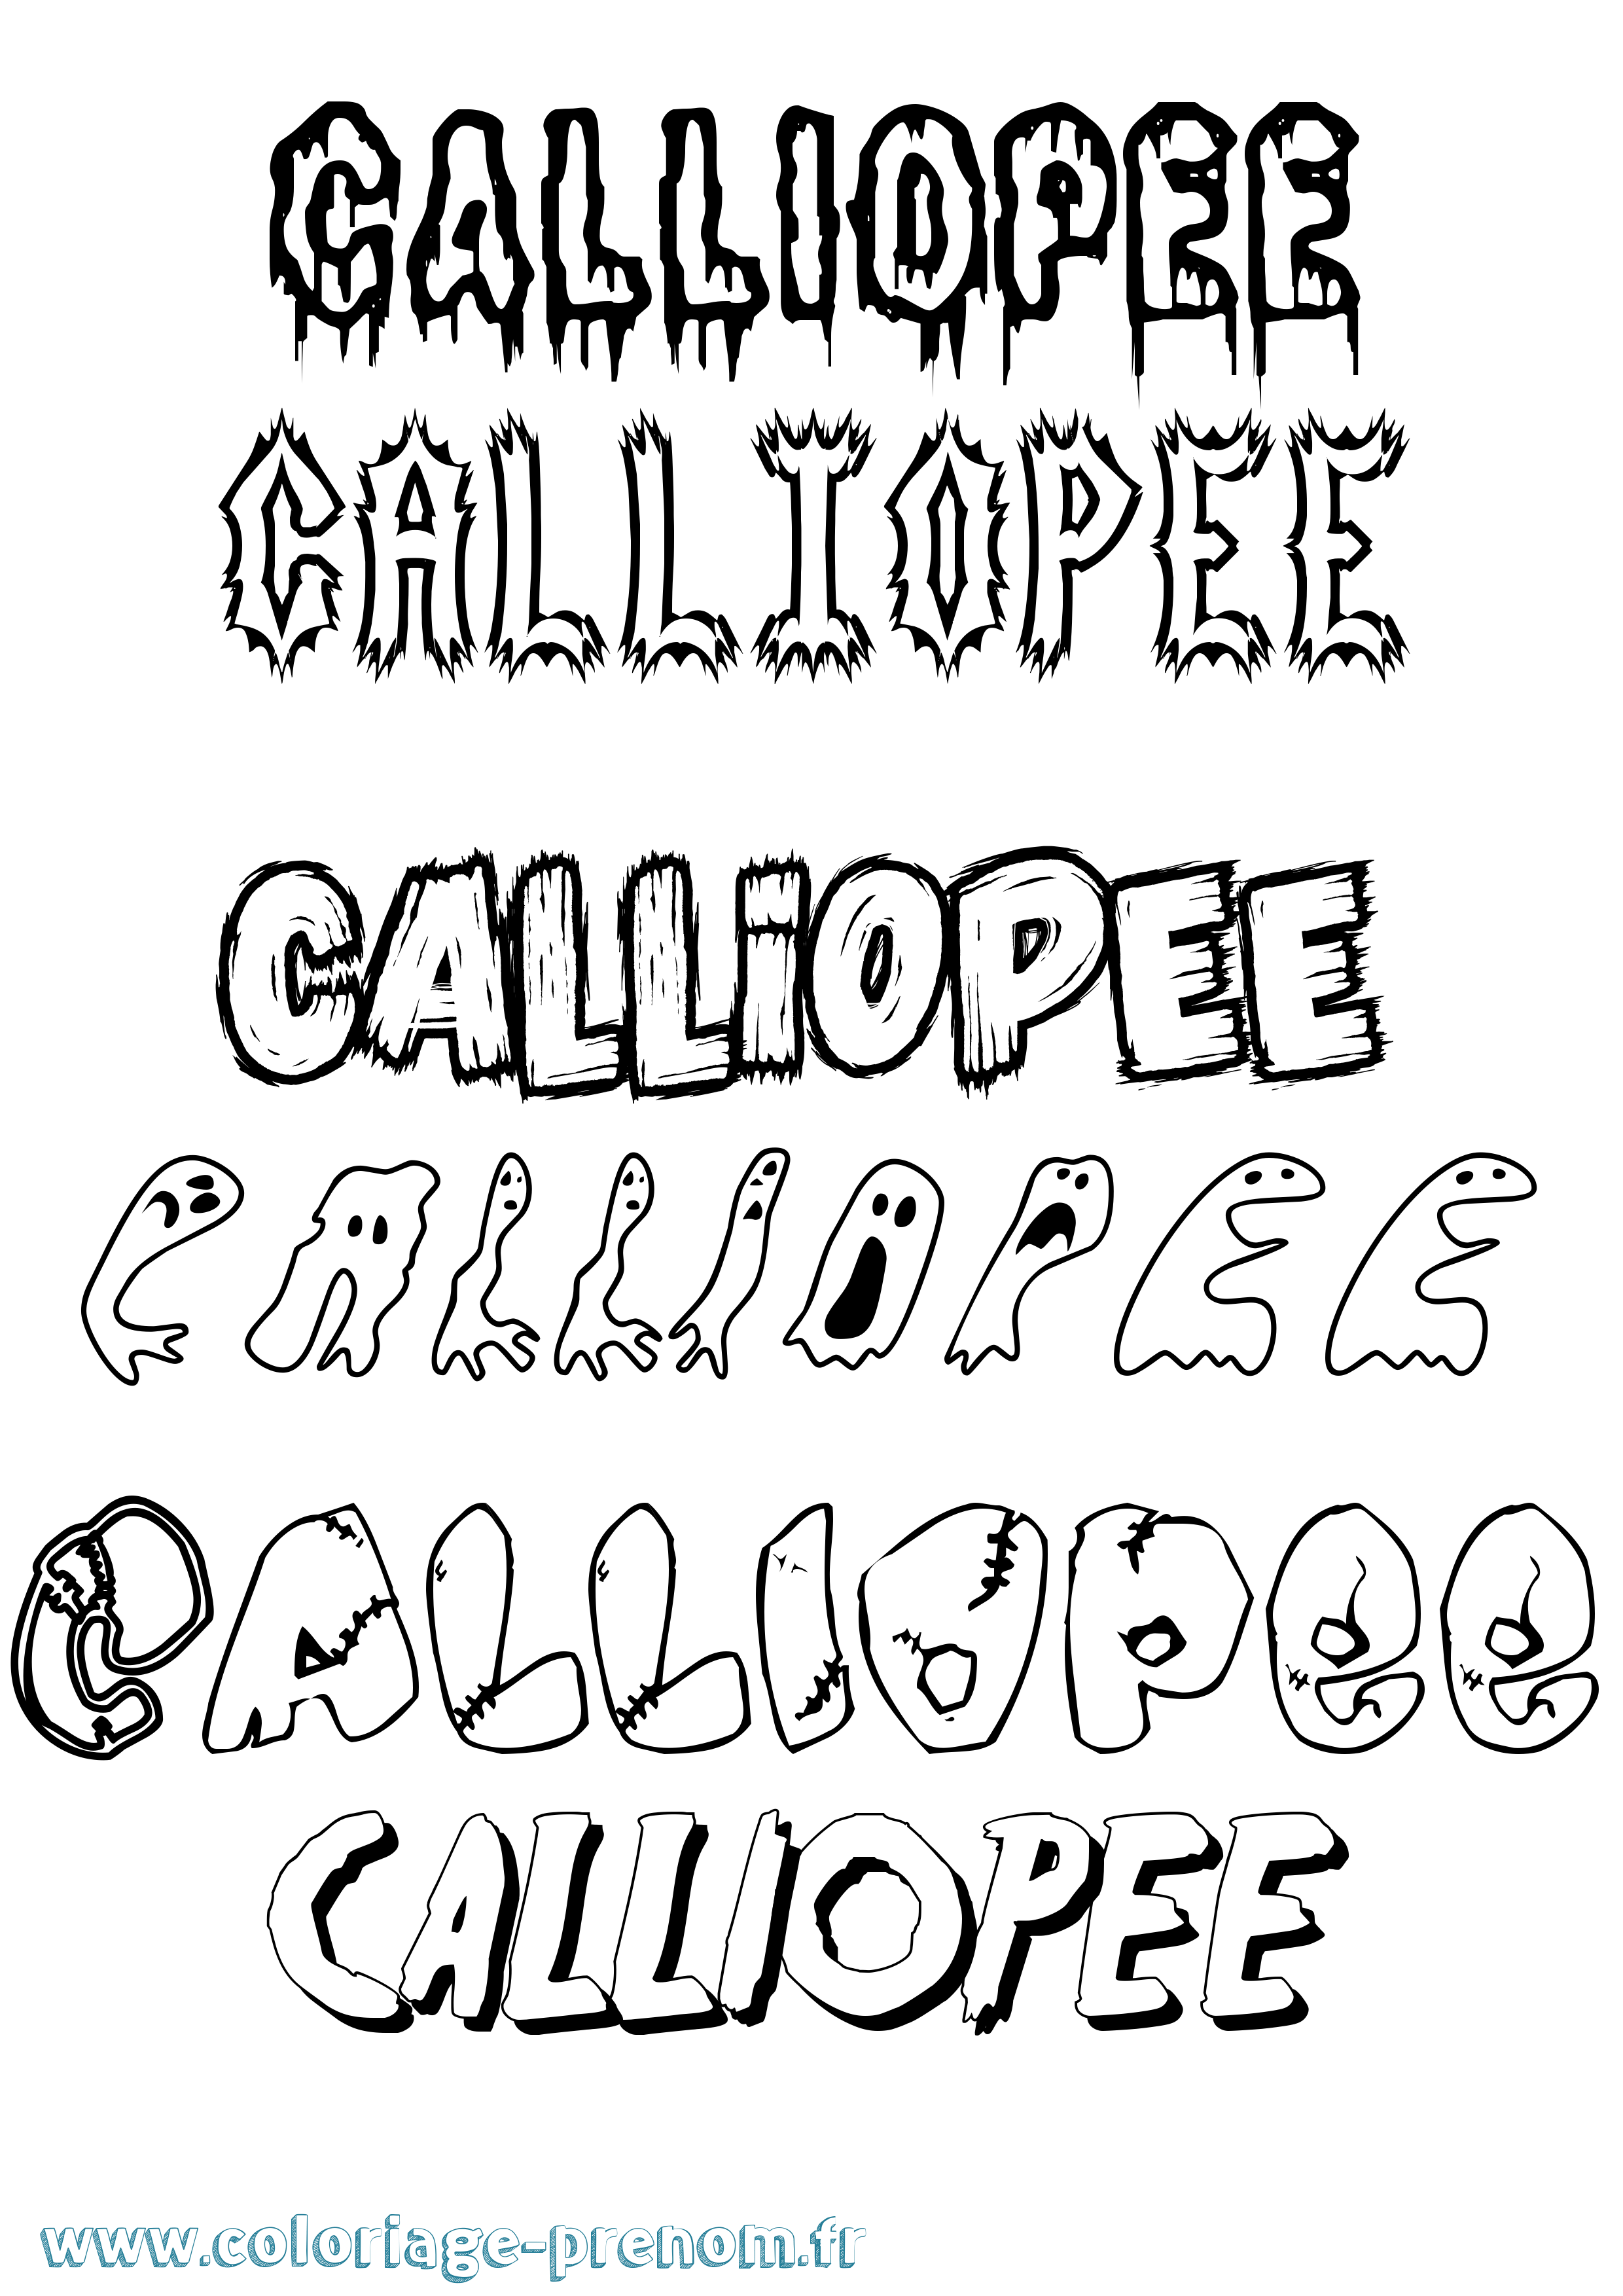 Coloriage prénom Calliopee Frisson